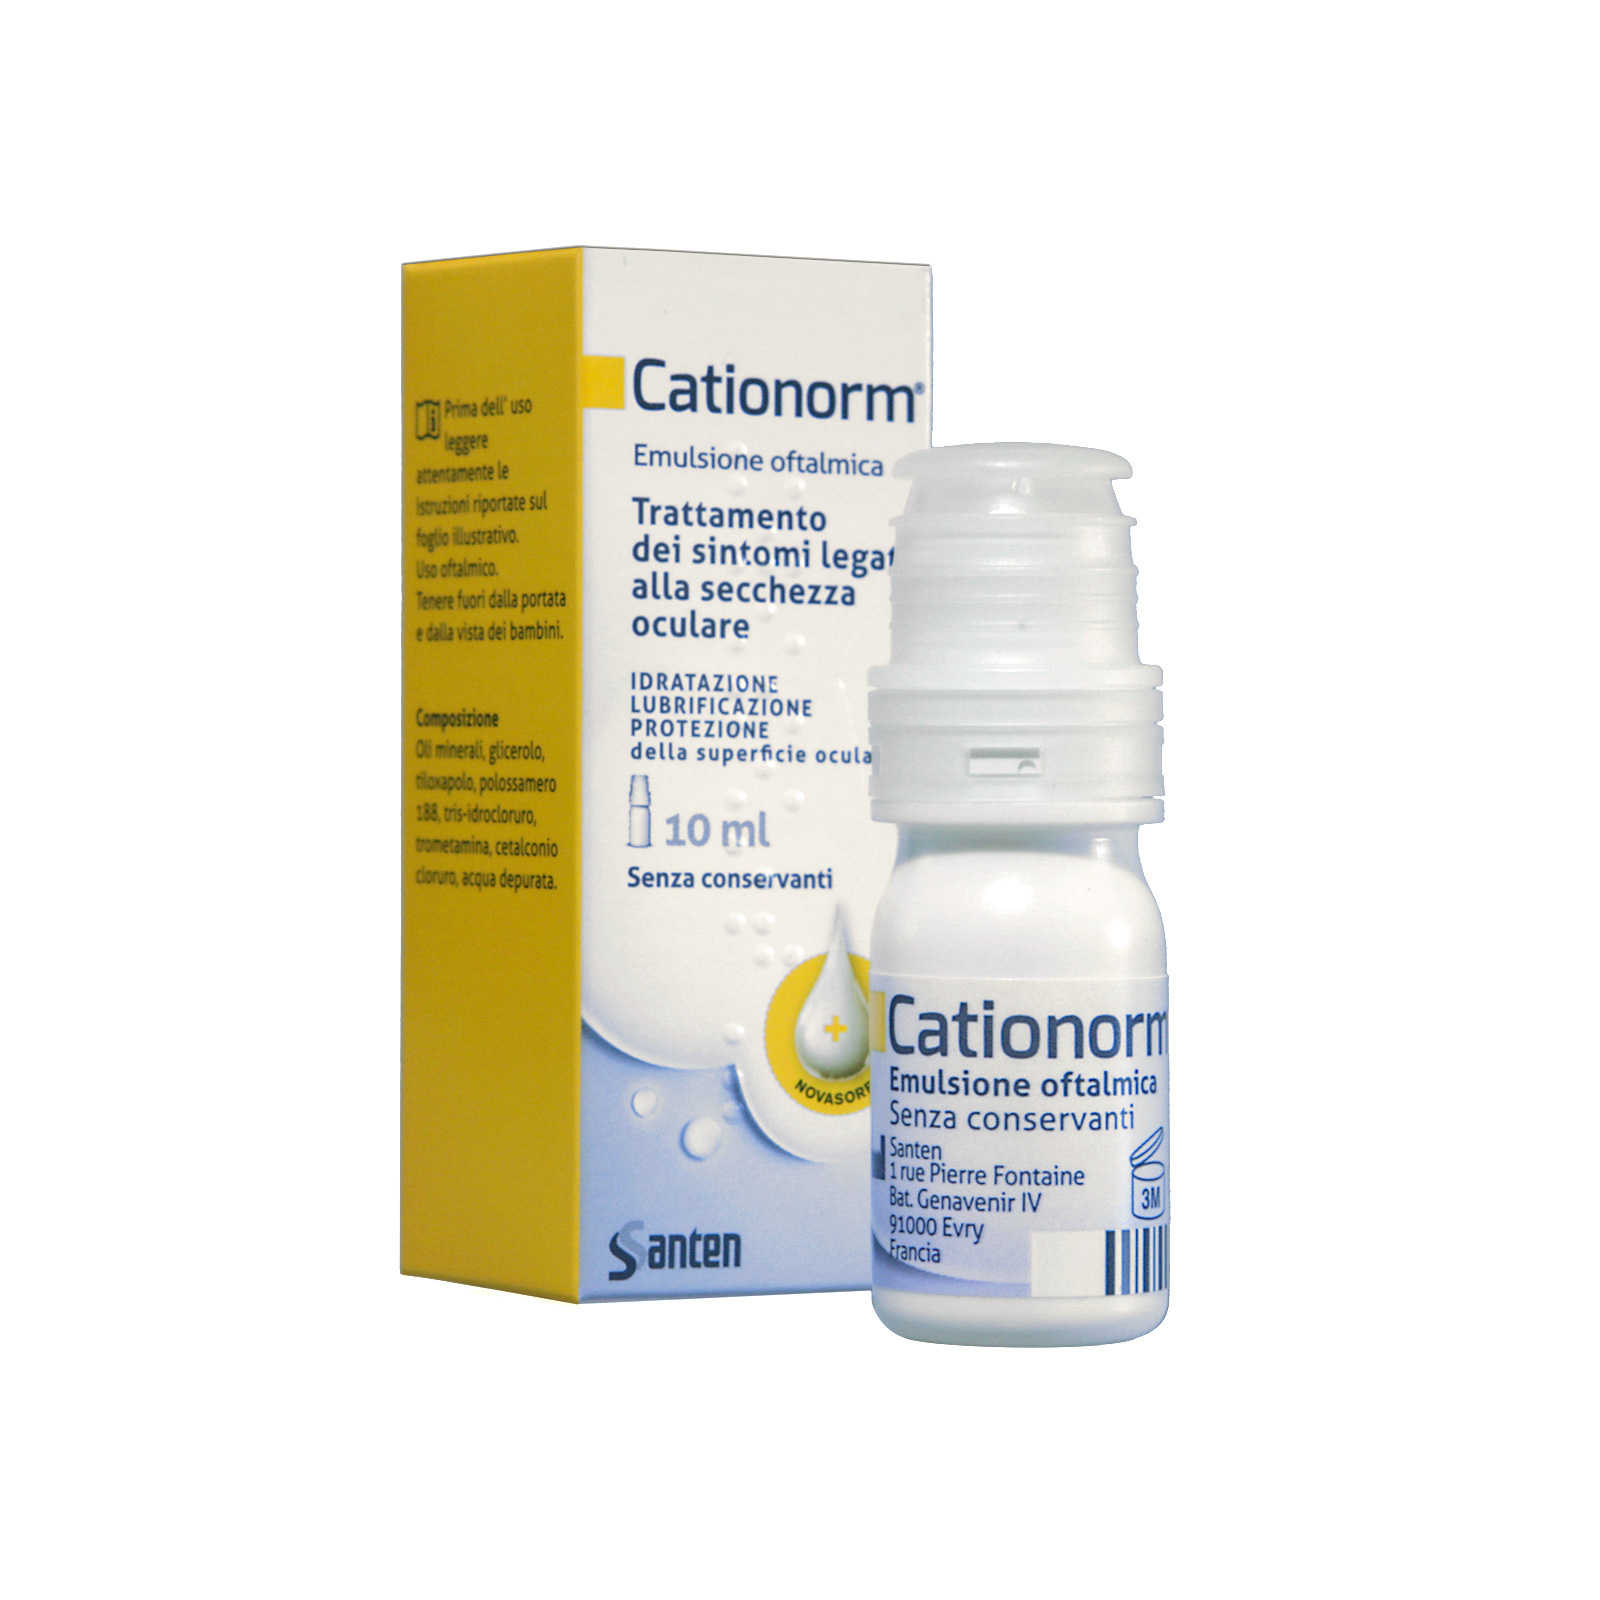 Cationorm - Emulsione Oftalmica - Protezione superficie oculare